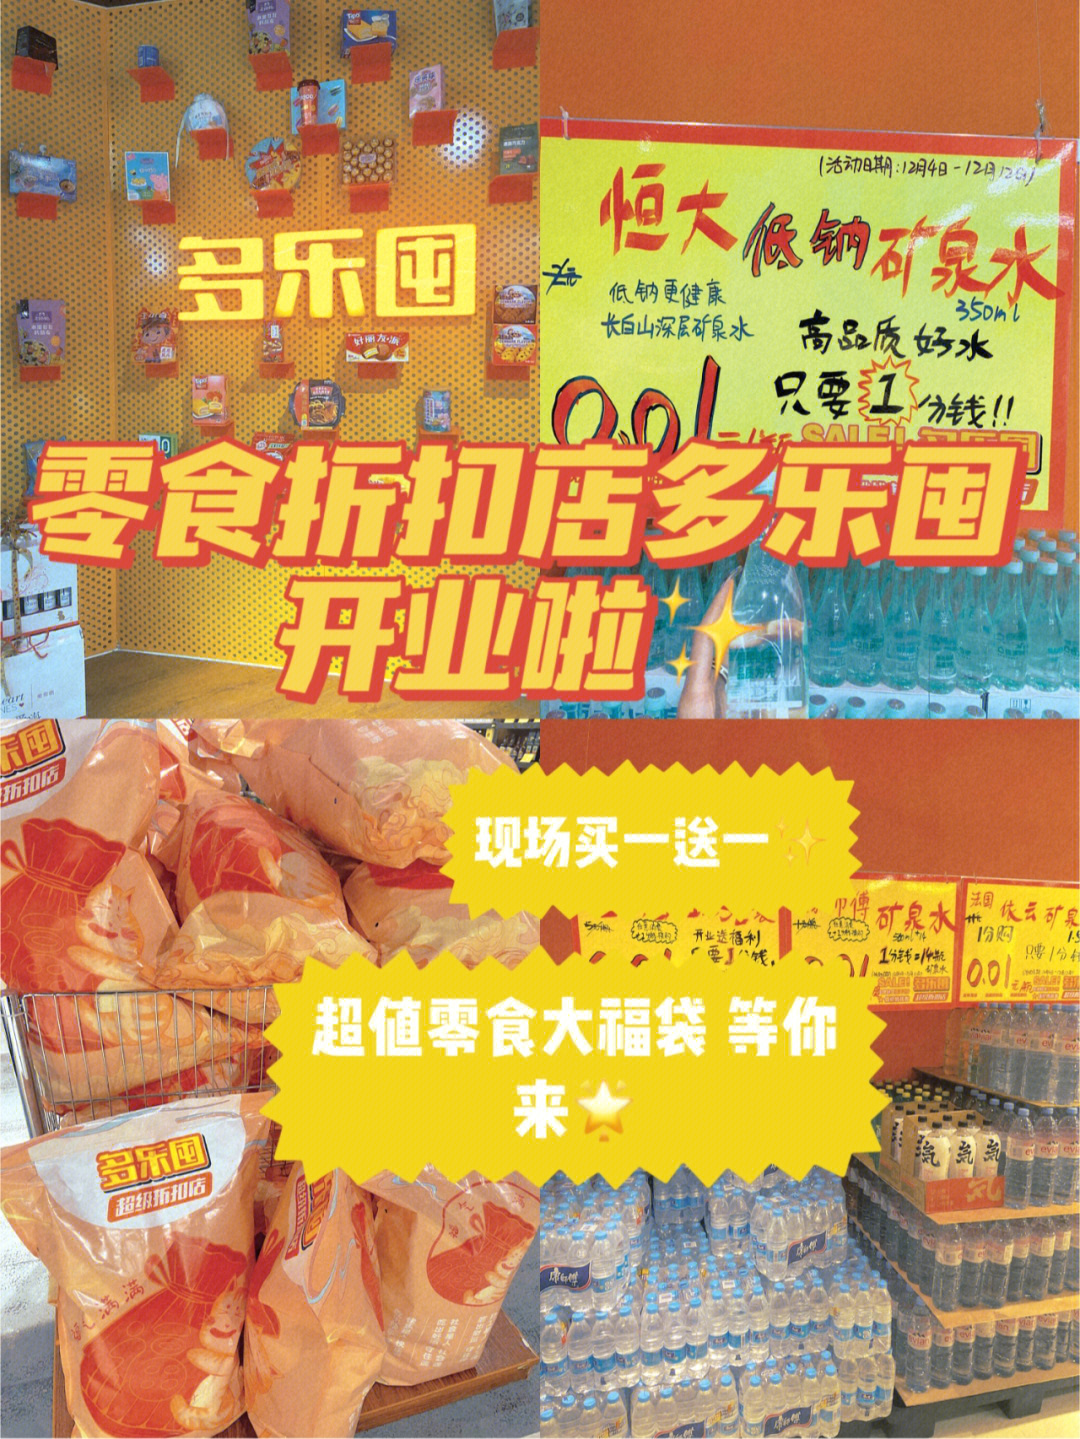 郑州新开业的折扣店多乐囤实现零食自由